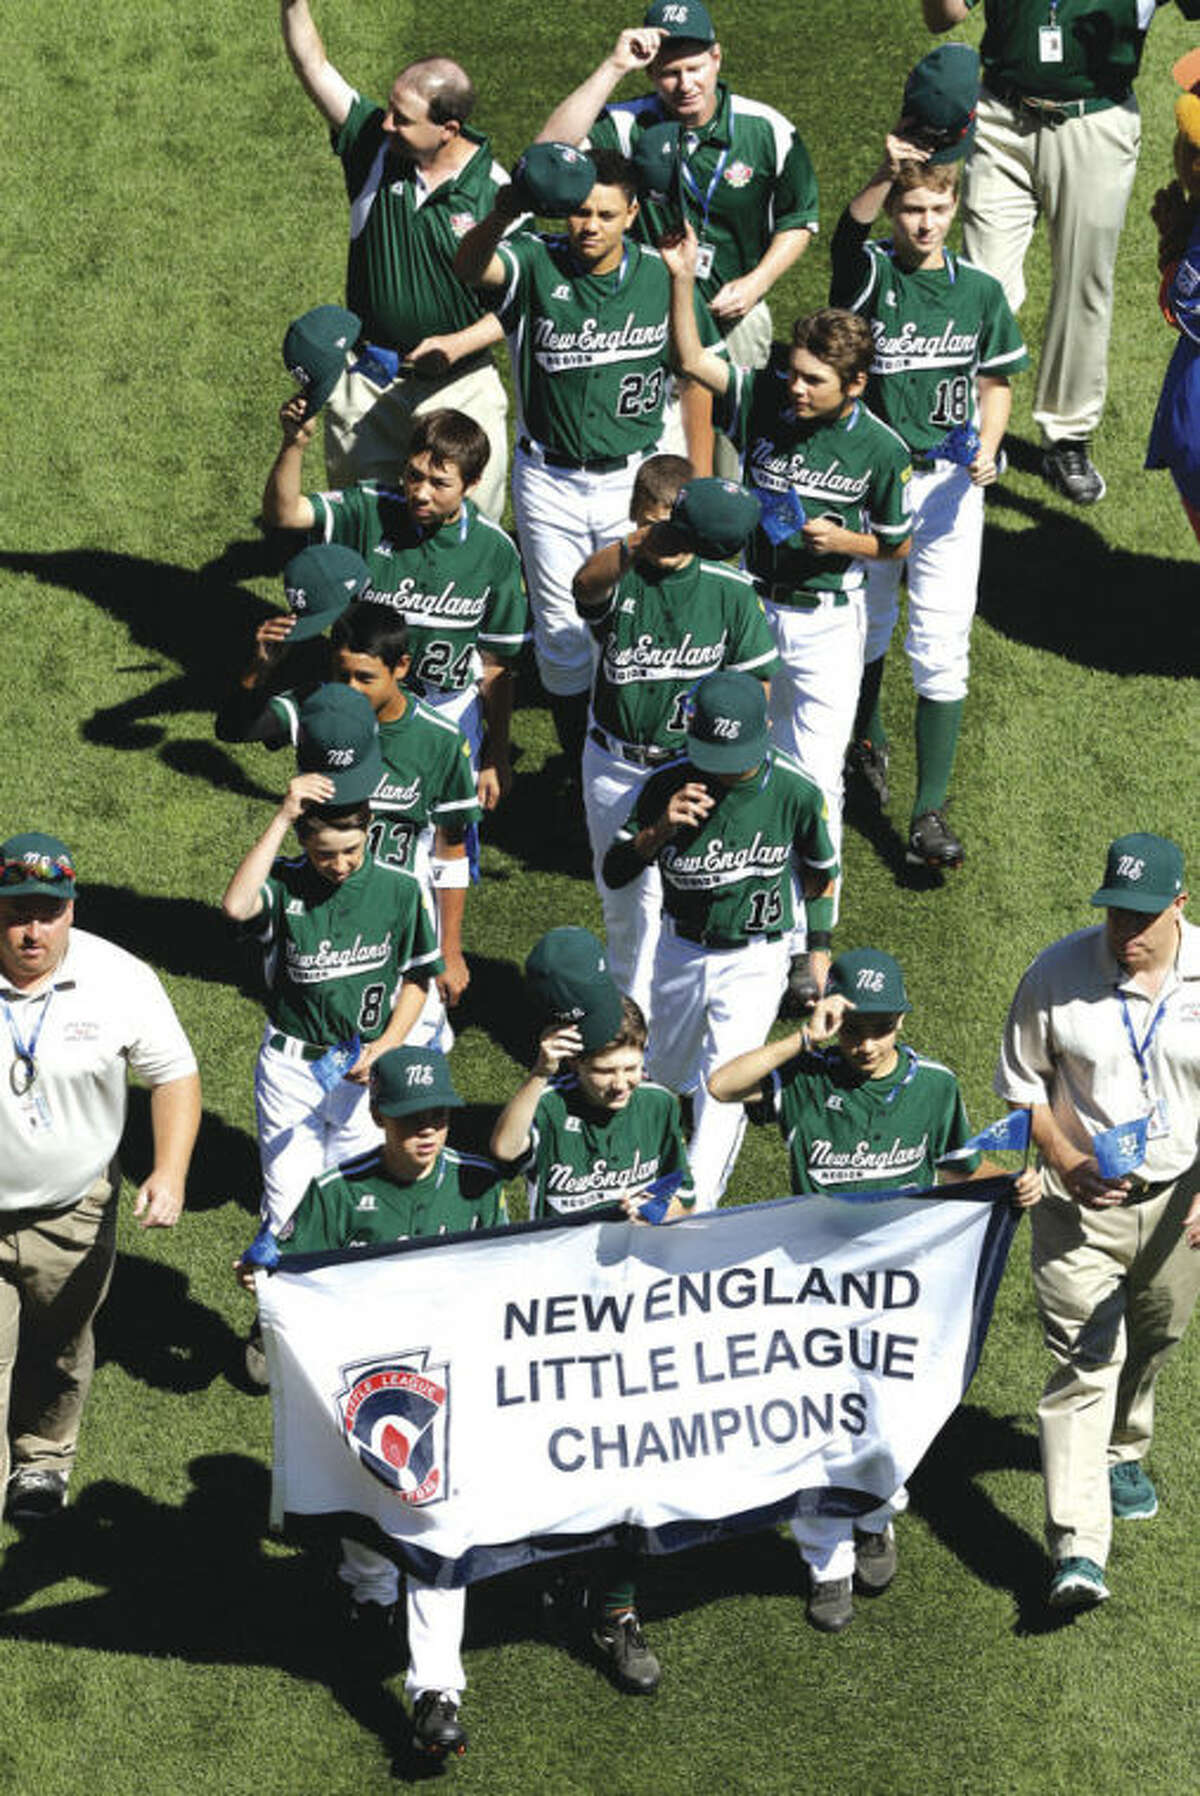 New Jersey wins Little League World Series opener